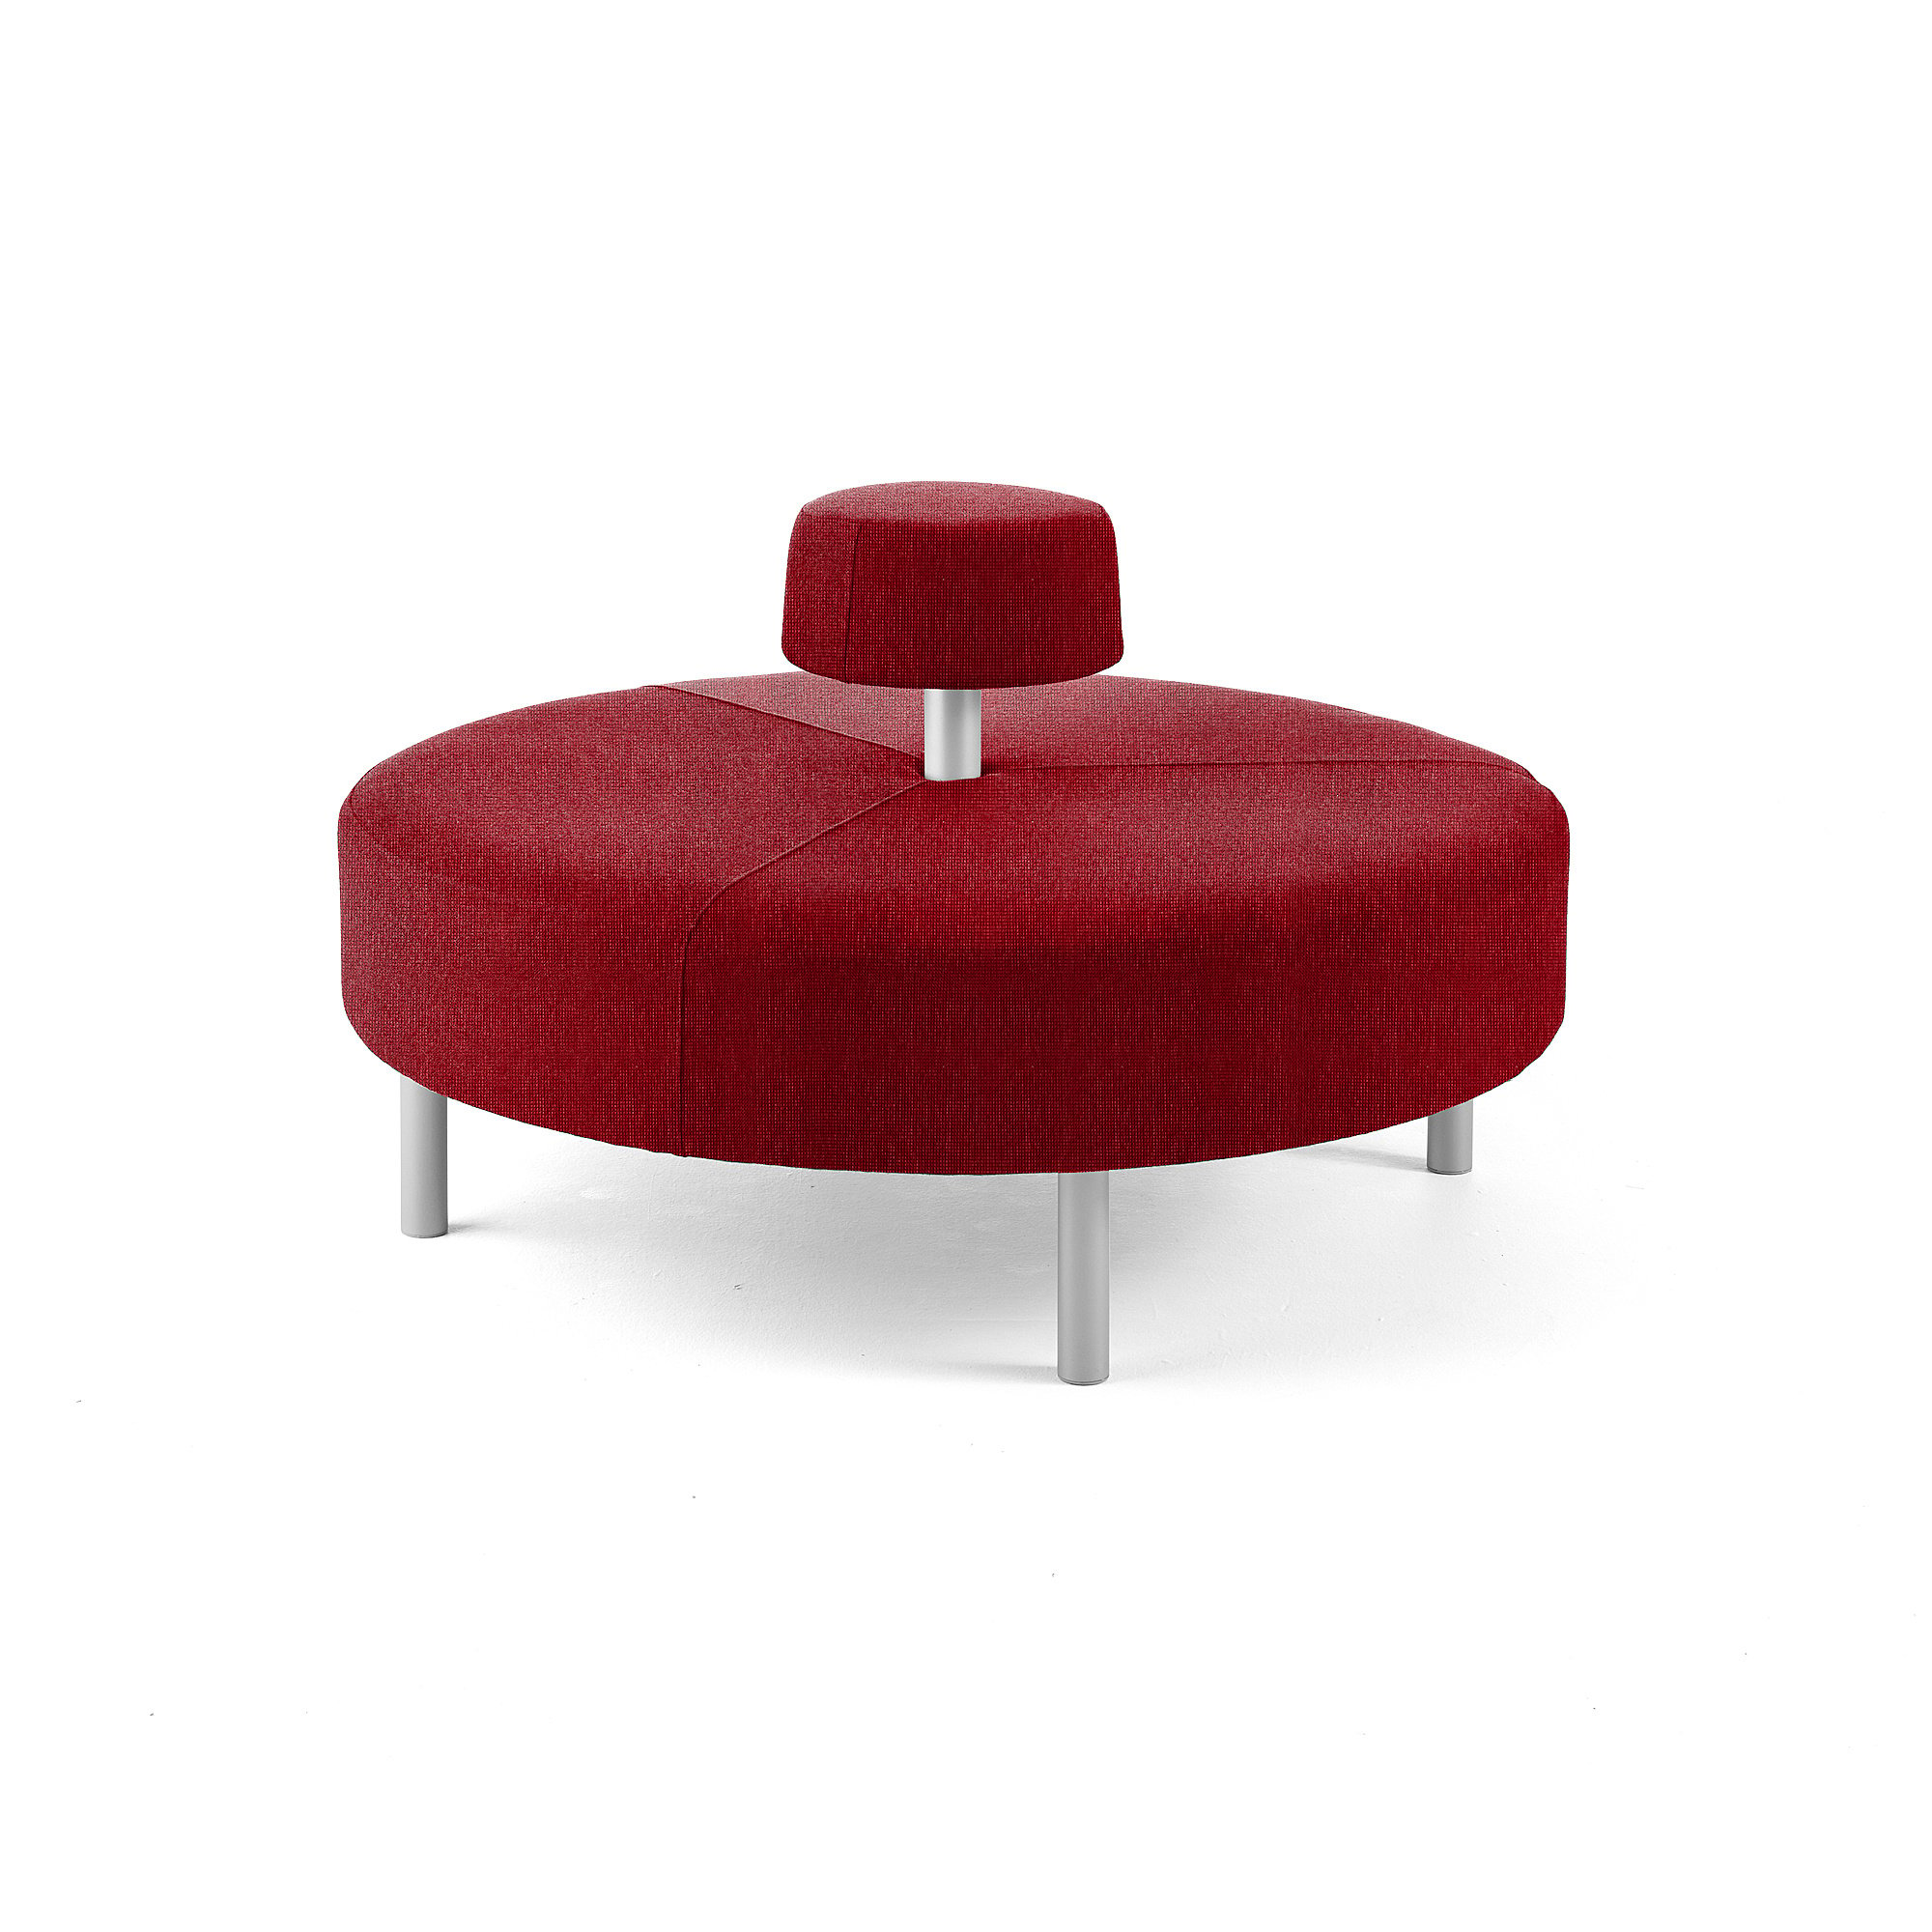 Kulatá sedačka DOT, kruhové opěradlo, Ø 1300 mm, potah Zone, červená